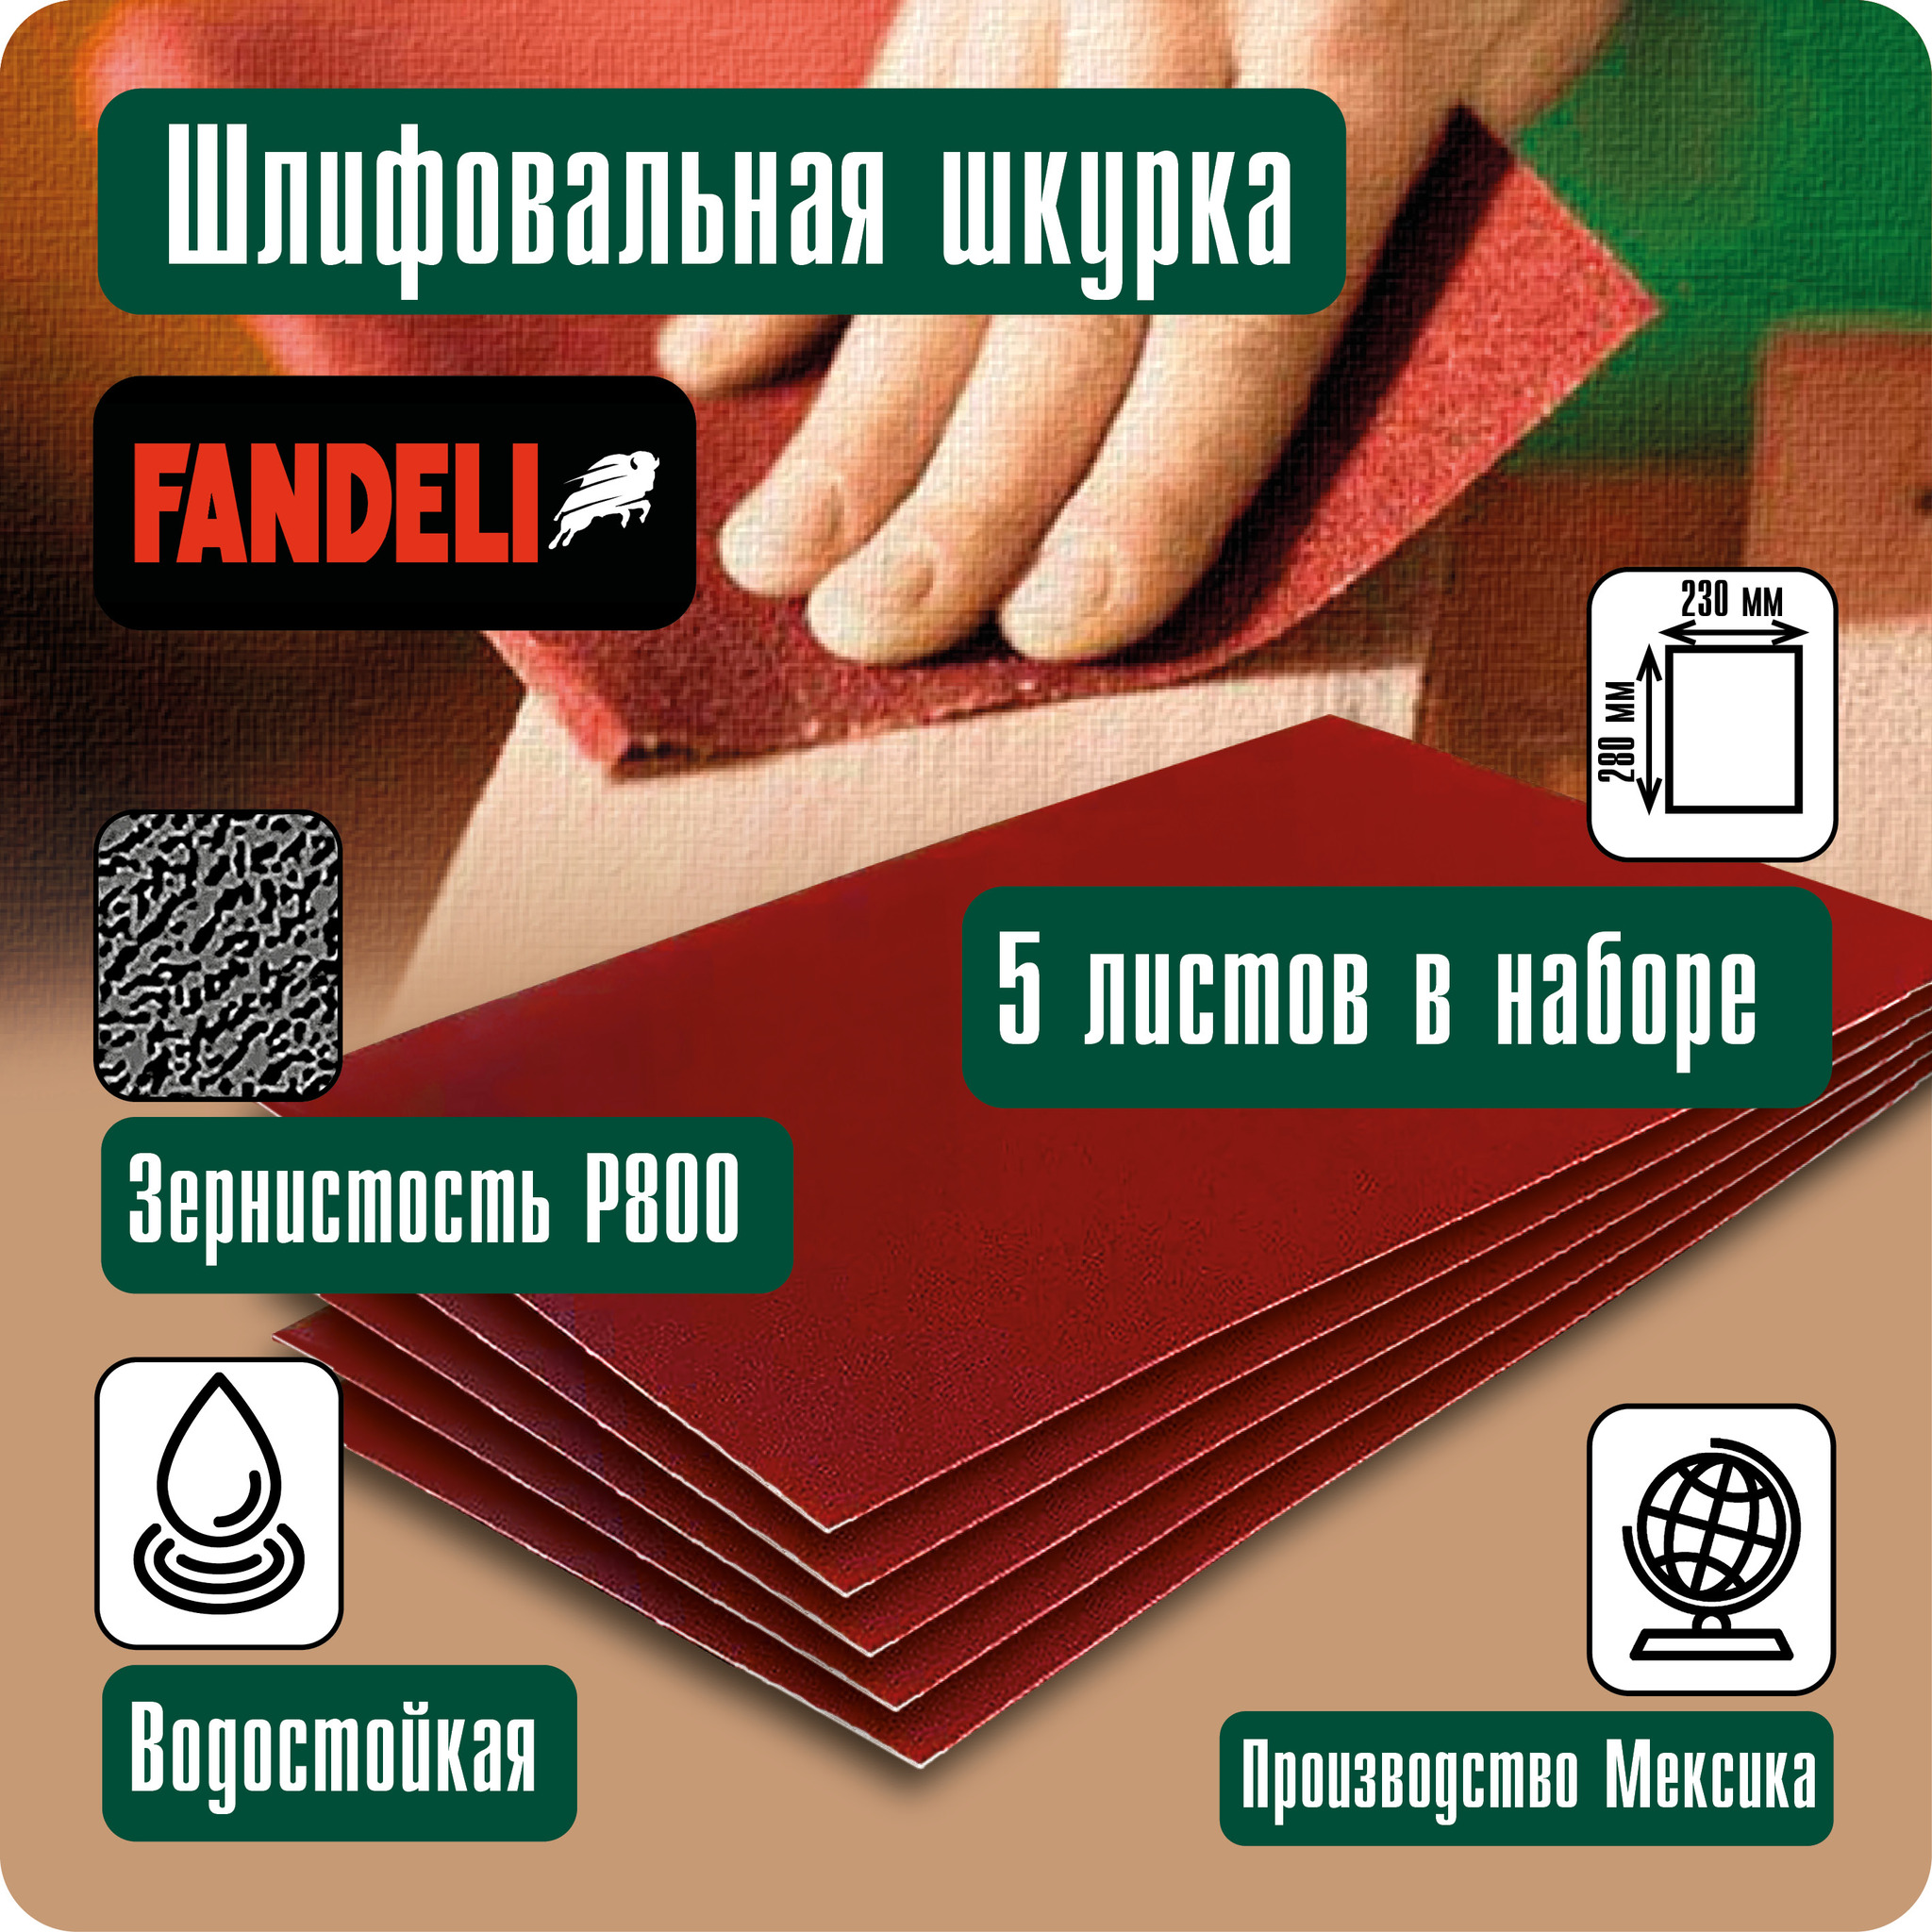 Наждачная бумага Fandeli шлифовальная шкурка 5шт P800 5ФШ800 наждачная бумага fandeli шлифовальная шкурка 5шт p800 5фш800